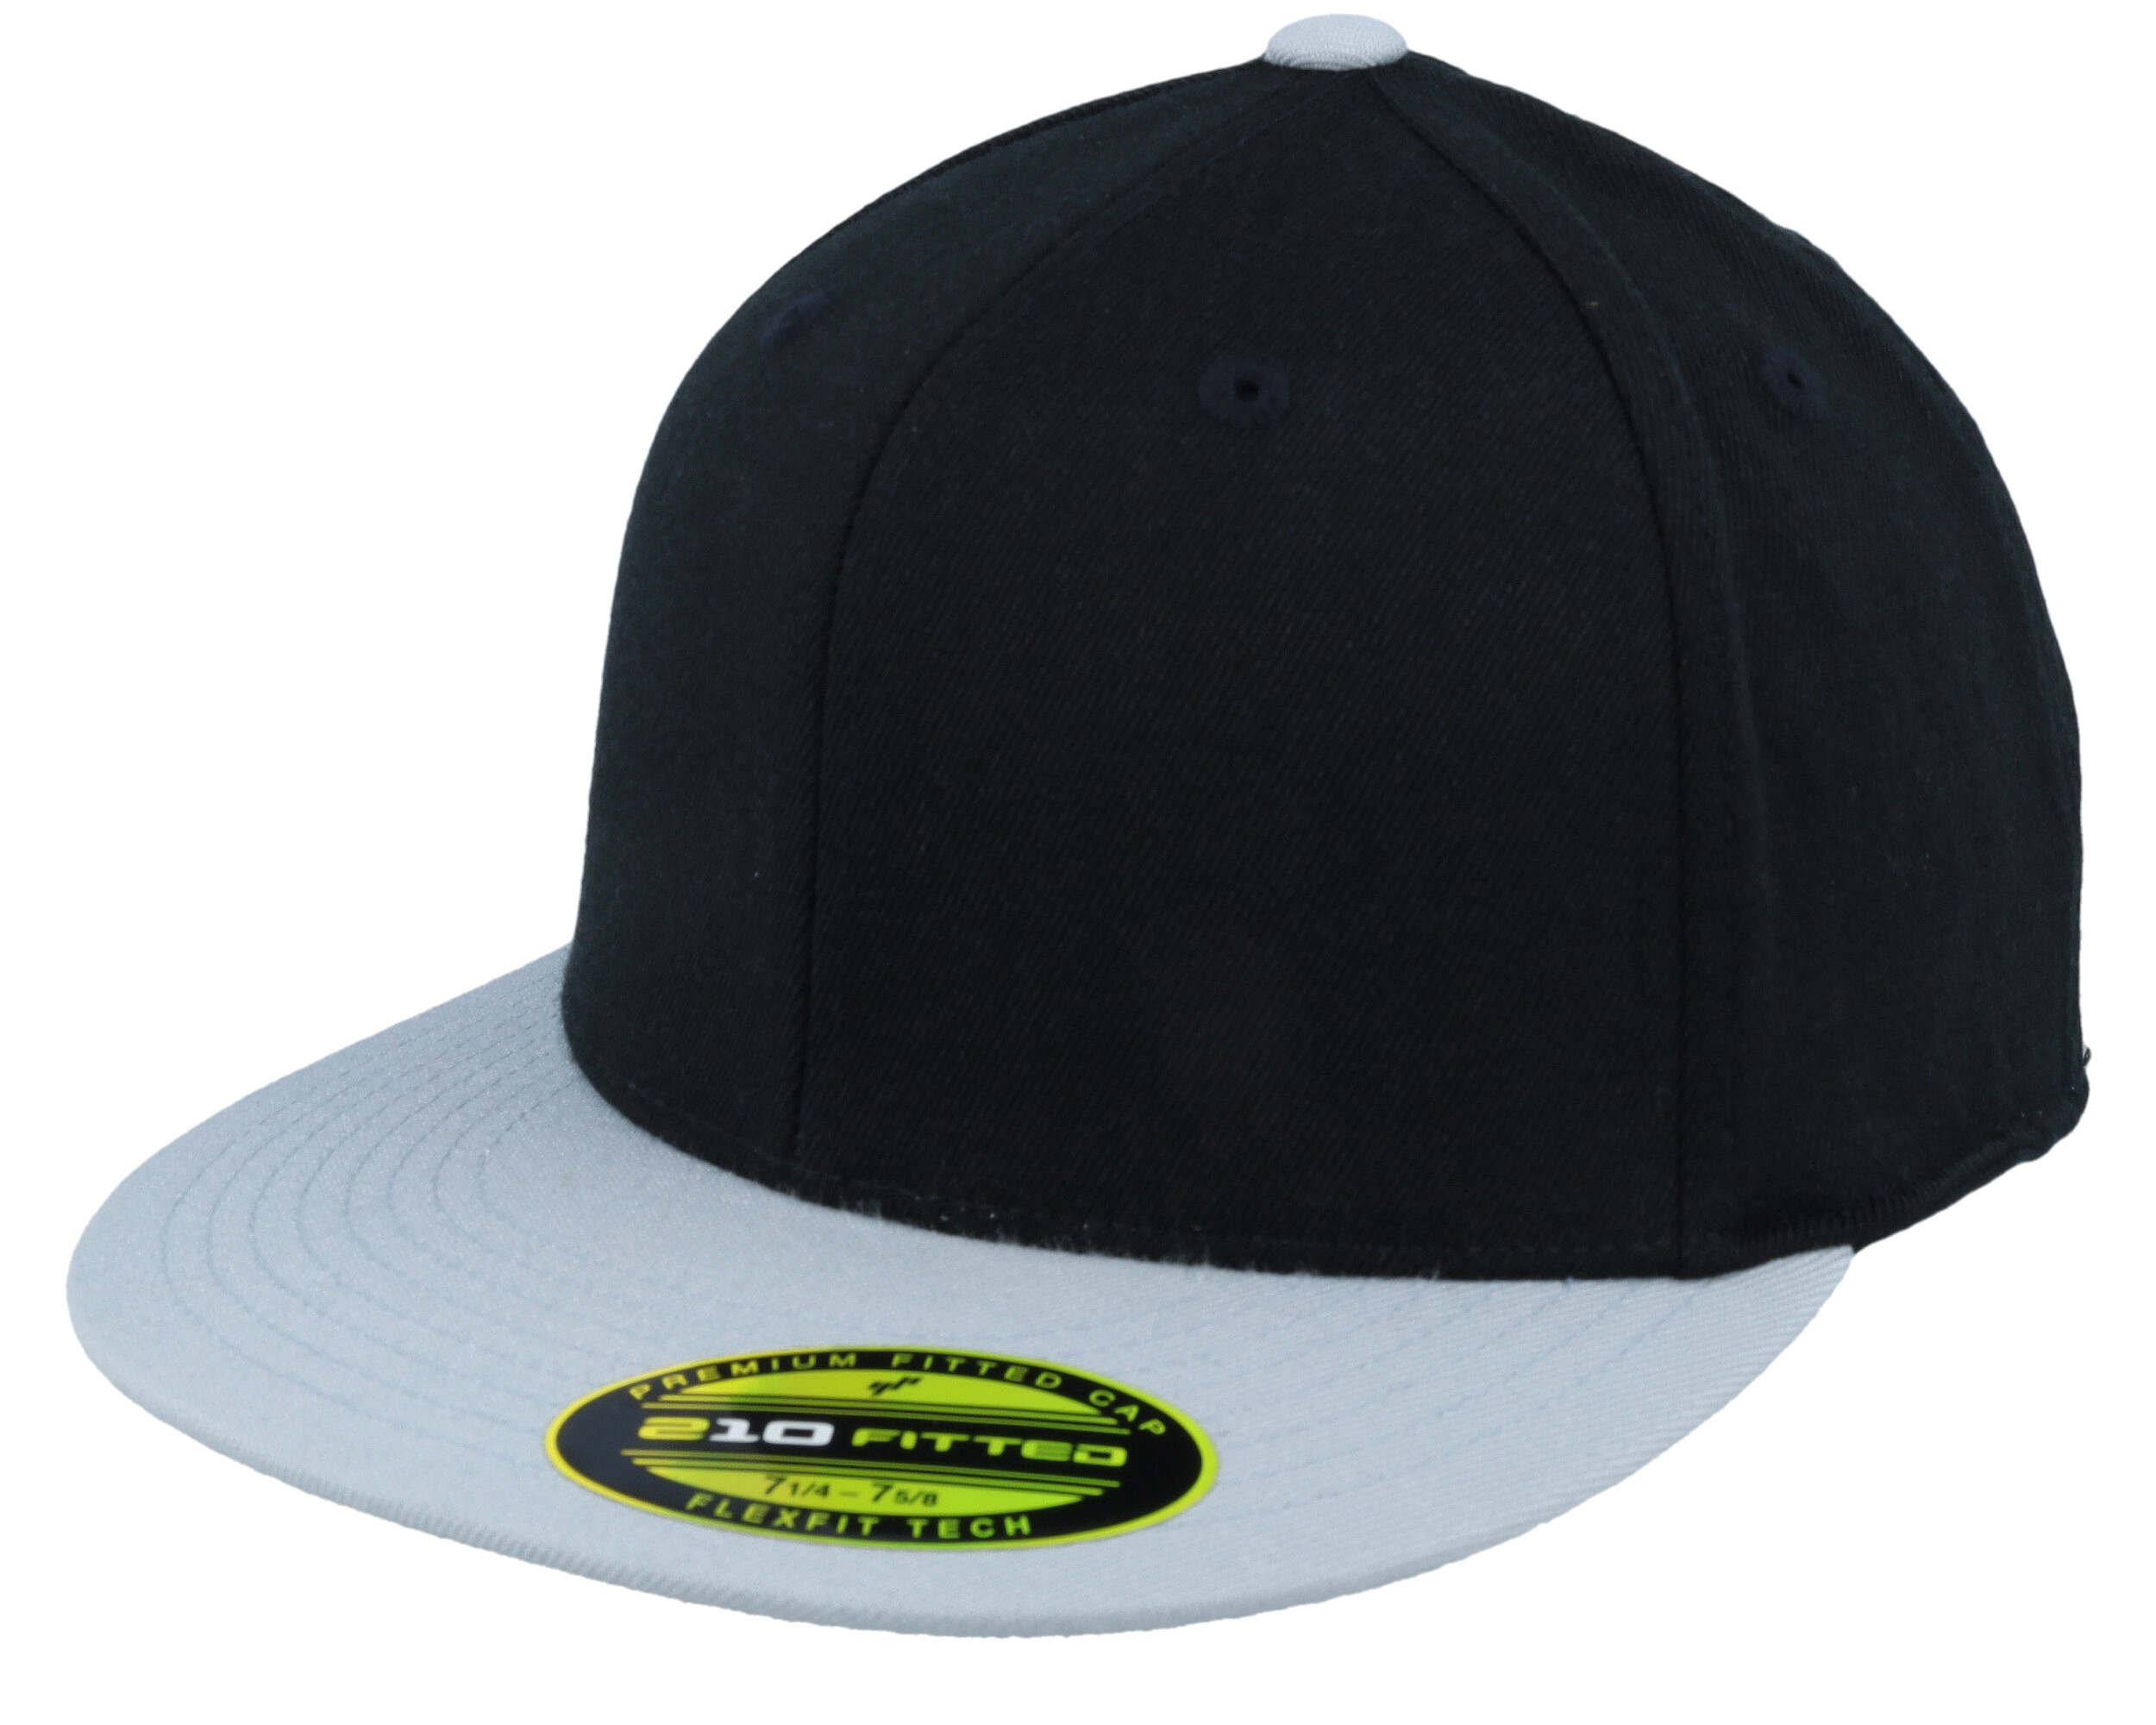 Black/Grey cap 210 Flexfit Premium Fitted - 2-Tone